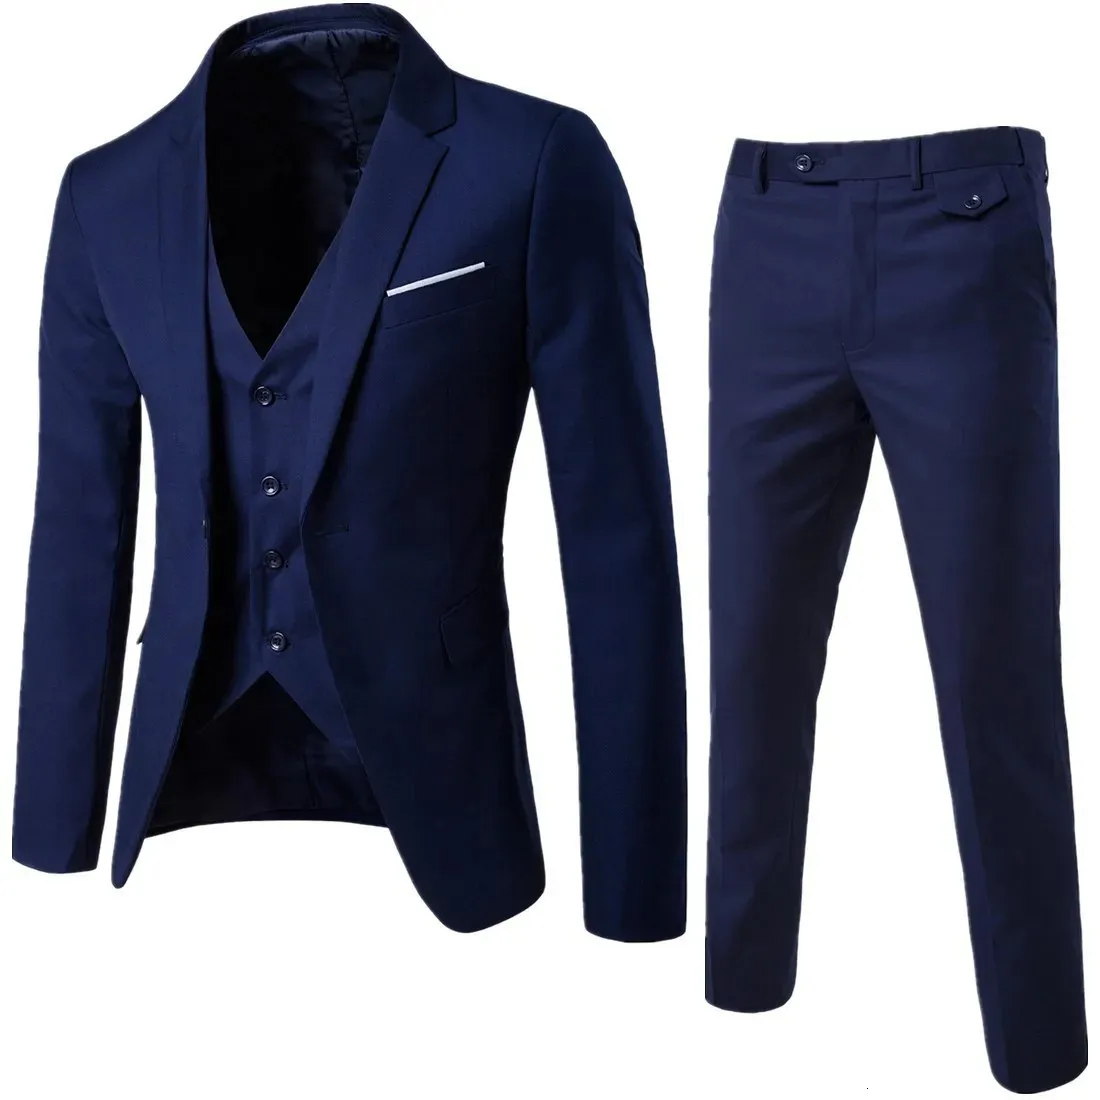 Mens Suits Blazers Fashion Men Classic 3piece Set Suit Wedding Grooming Slim Fit Jacket Pant Vest Black Gray Blue Burgundy Plus Szie S6xl 231110